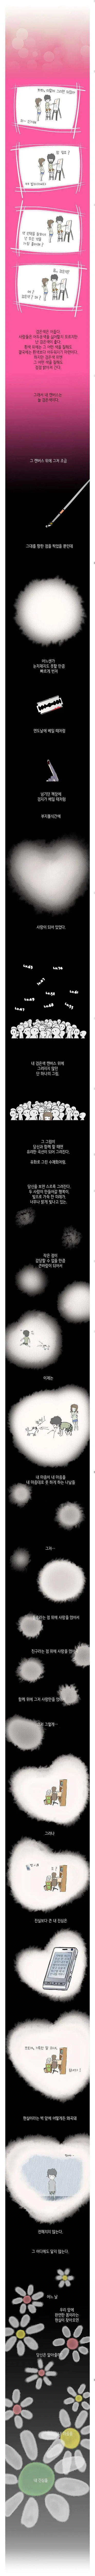 어떤 드루이드의 연애사 | mbong.kr 엠봉